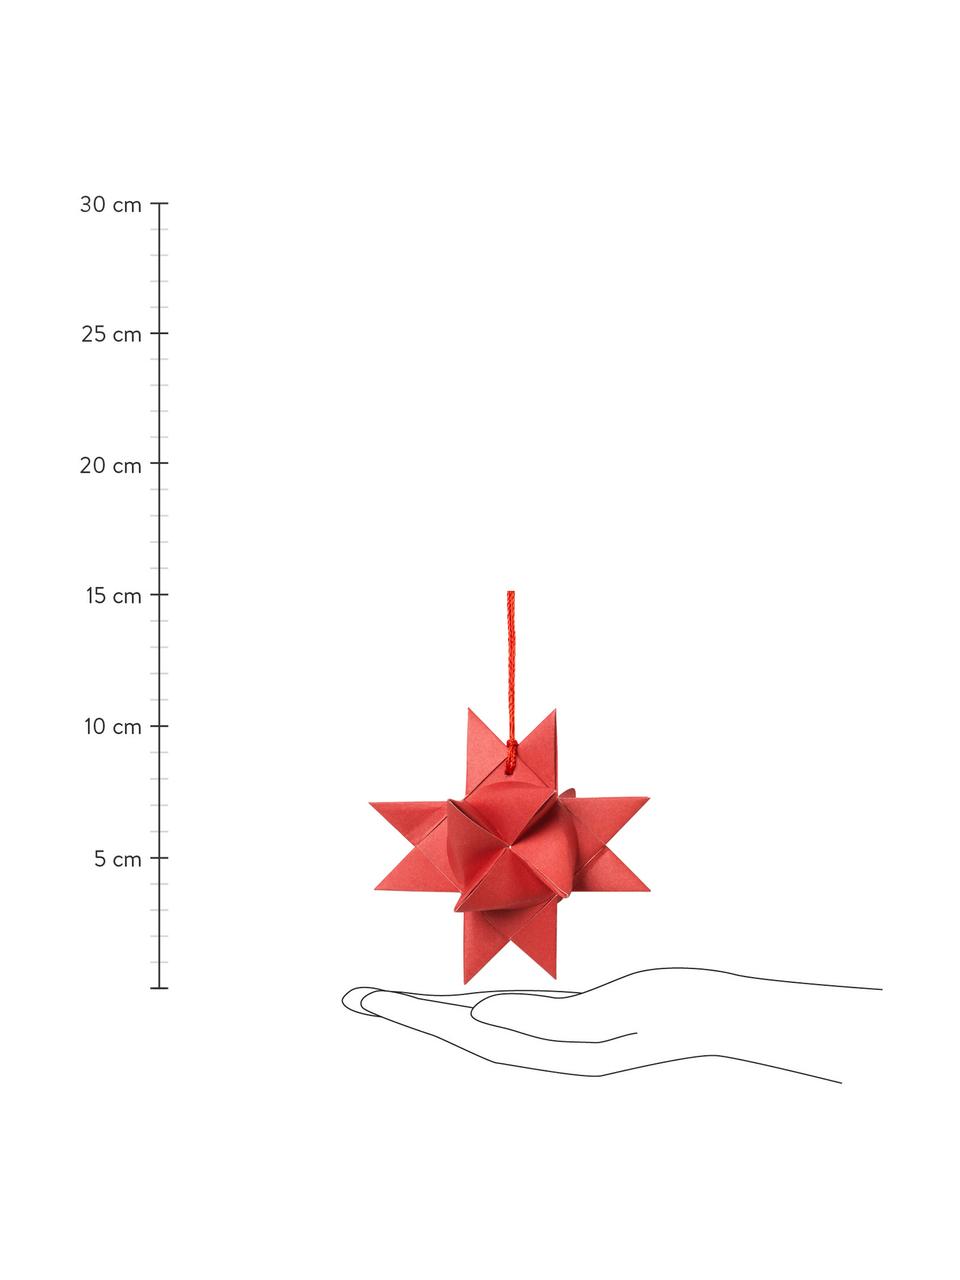 Kerstboomhangers Star Origami, 4 stuks, Papier, Rood, B 11 x D 11 cm